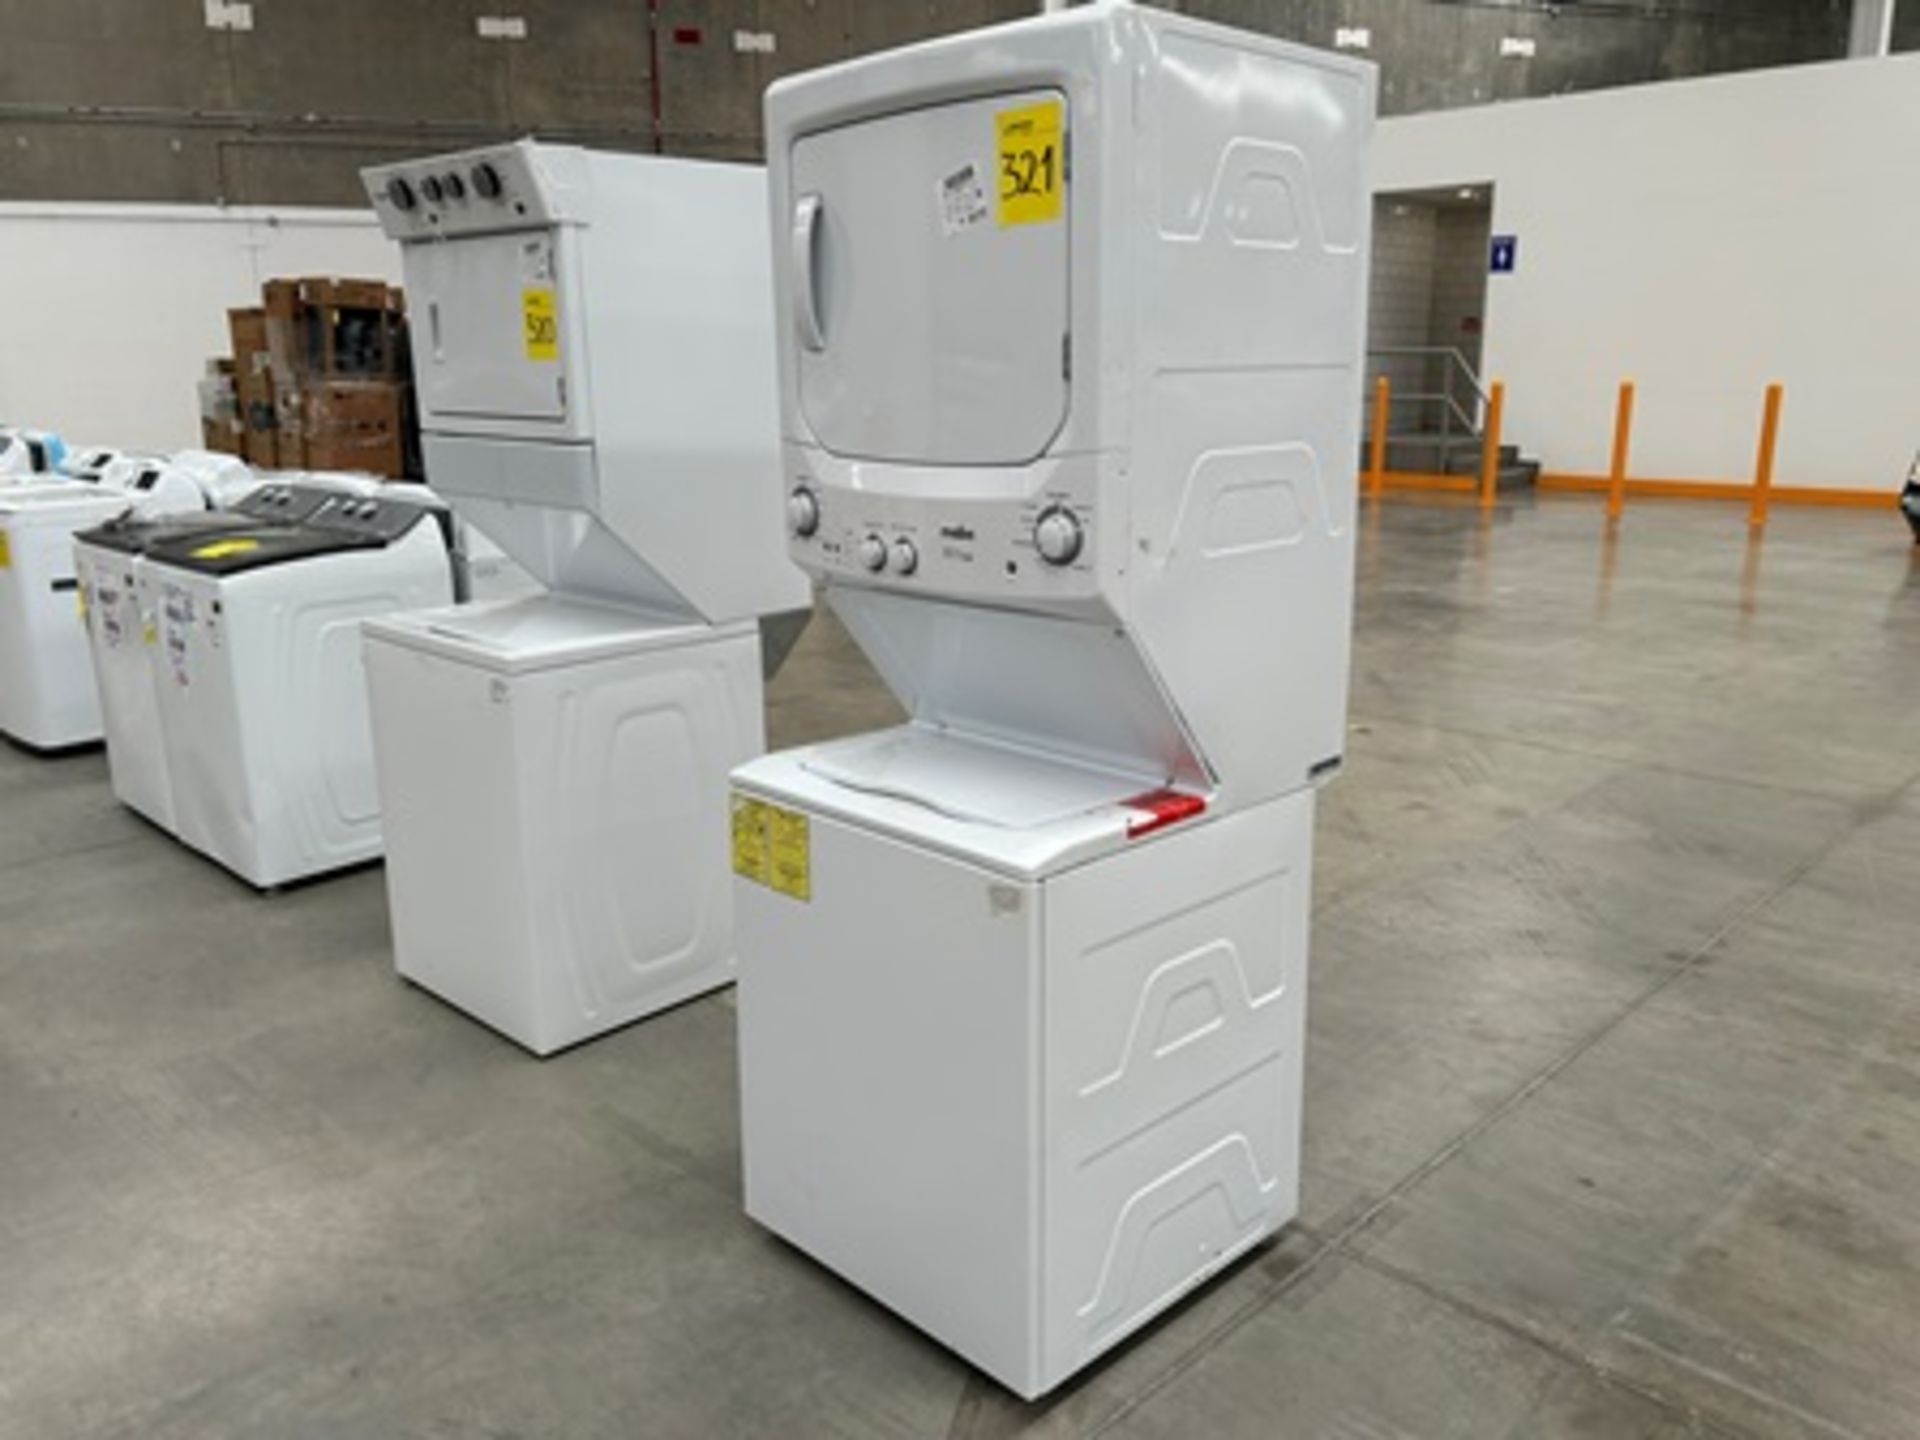 1 centro de lavado Marca MABE, Modelo MCL20400PSBB0, Serie 00893, Color Blanco (Equipo de devolució - Image 3 of 6